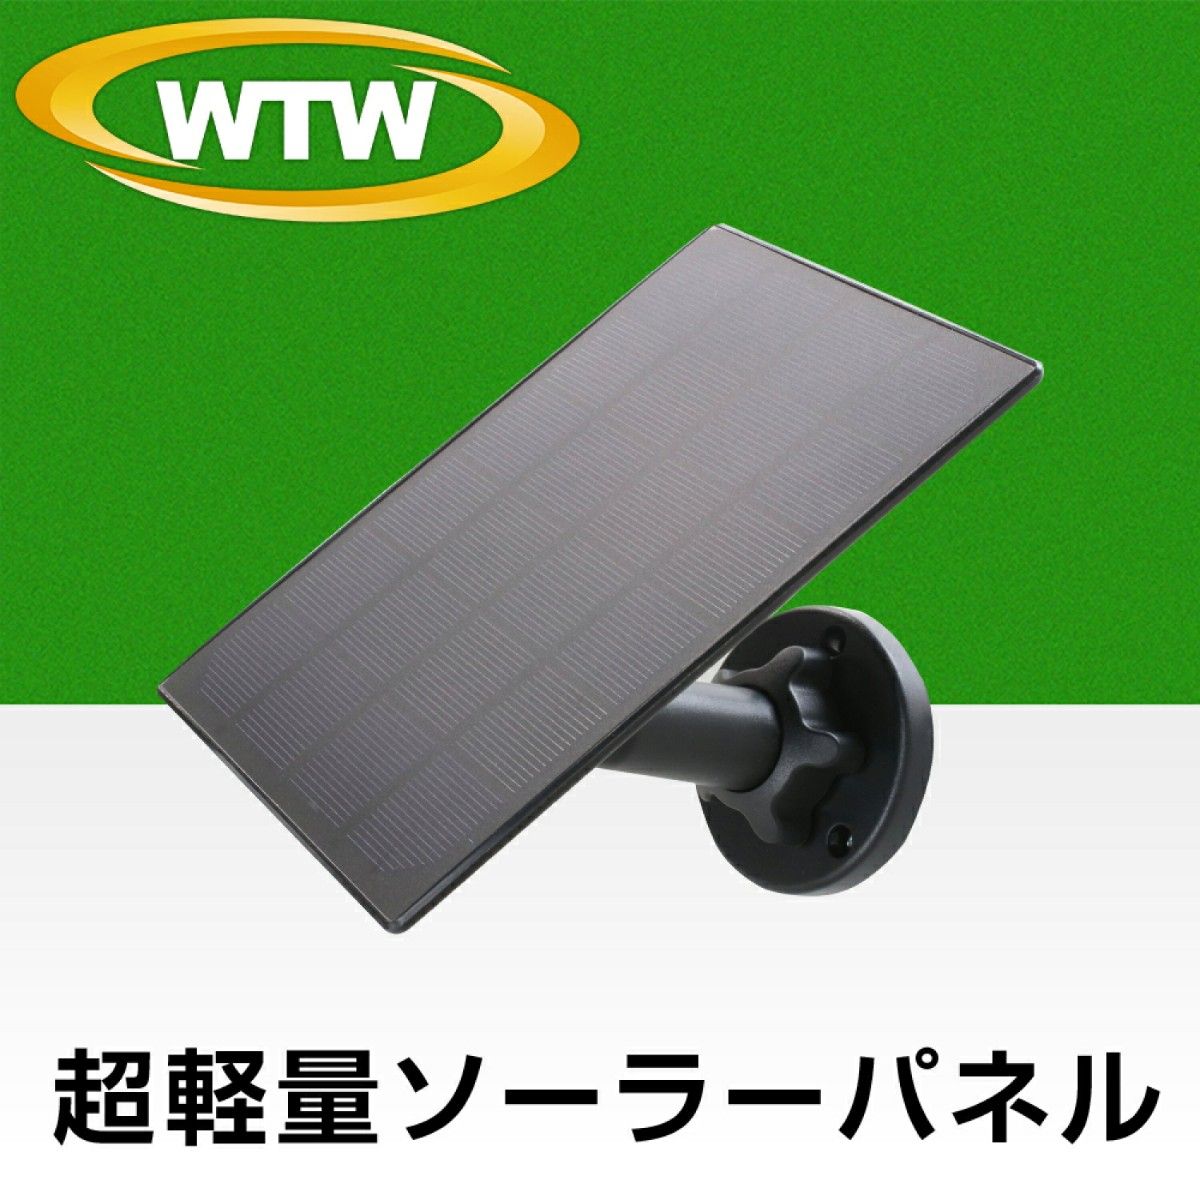 WTW 塚本無線 ちび太/ちび太PRO専用ソーラーパネル単体